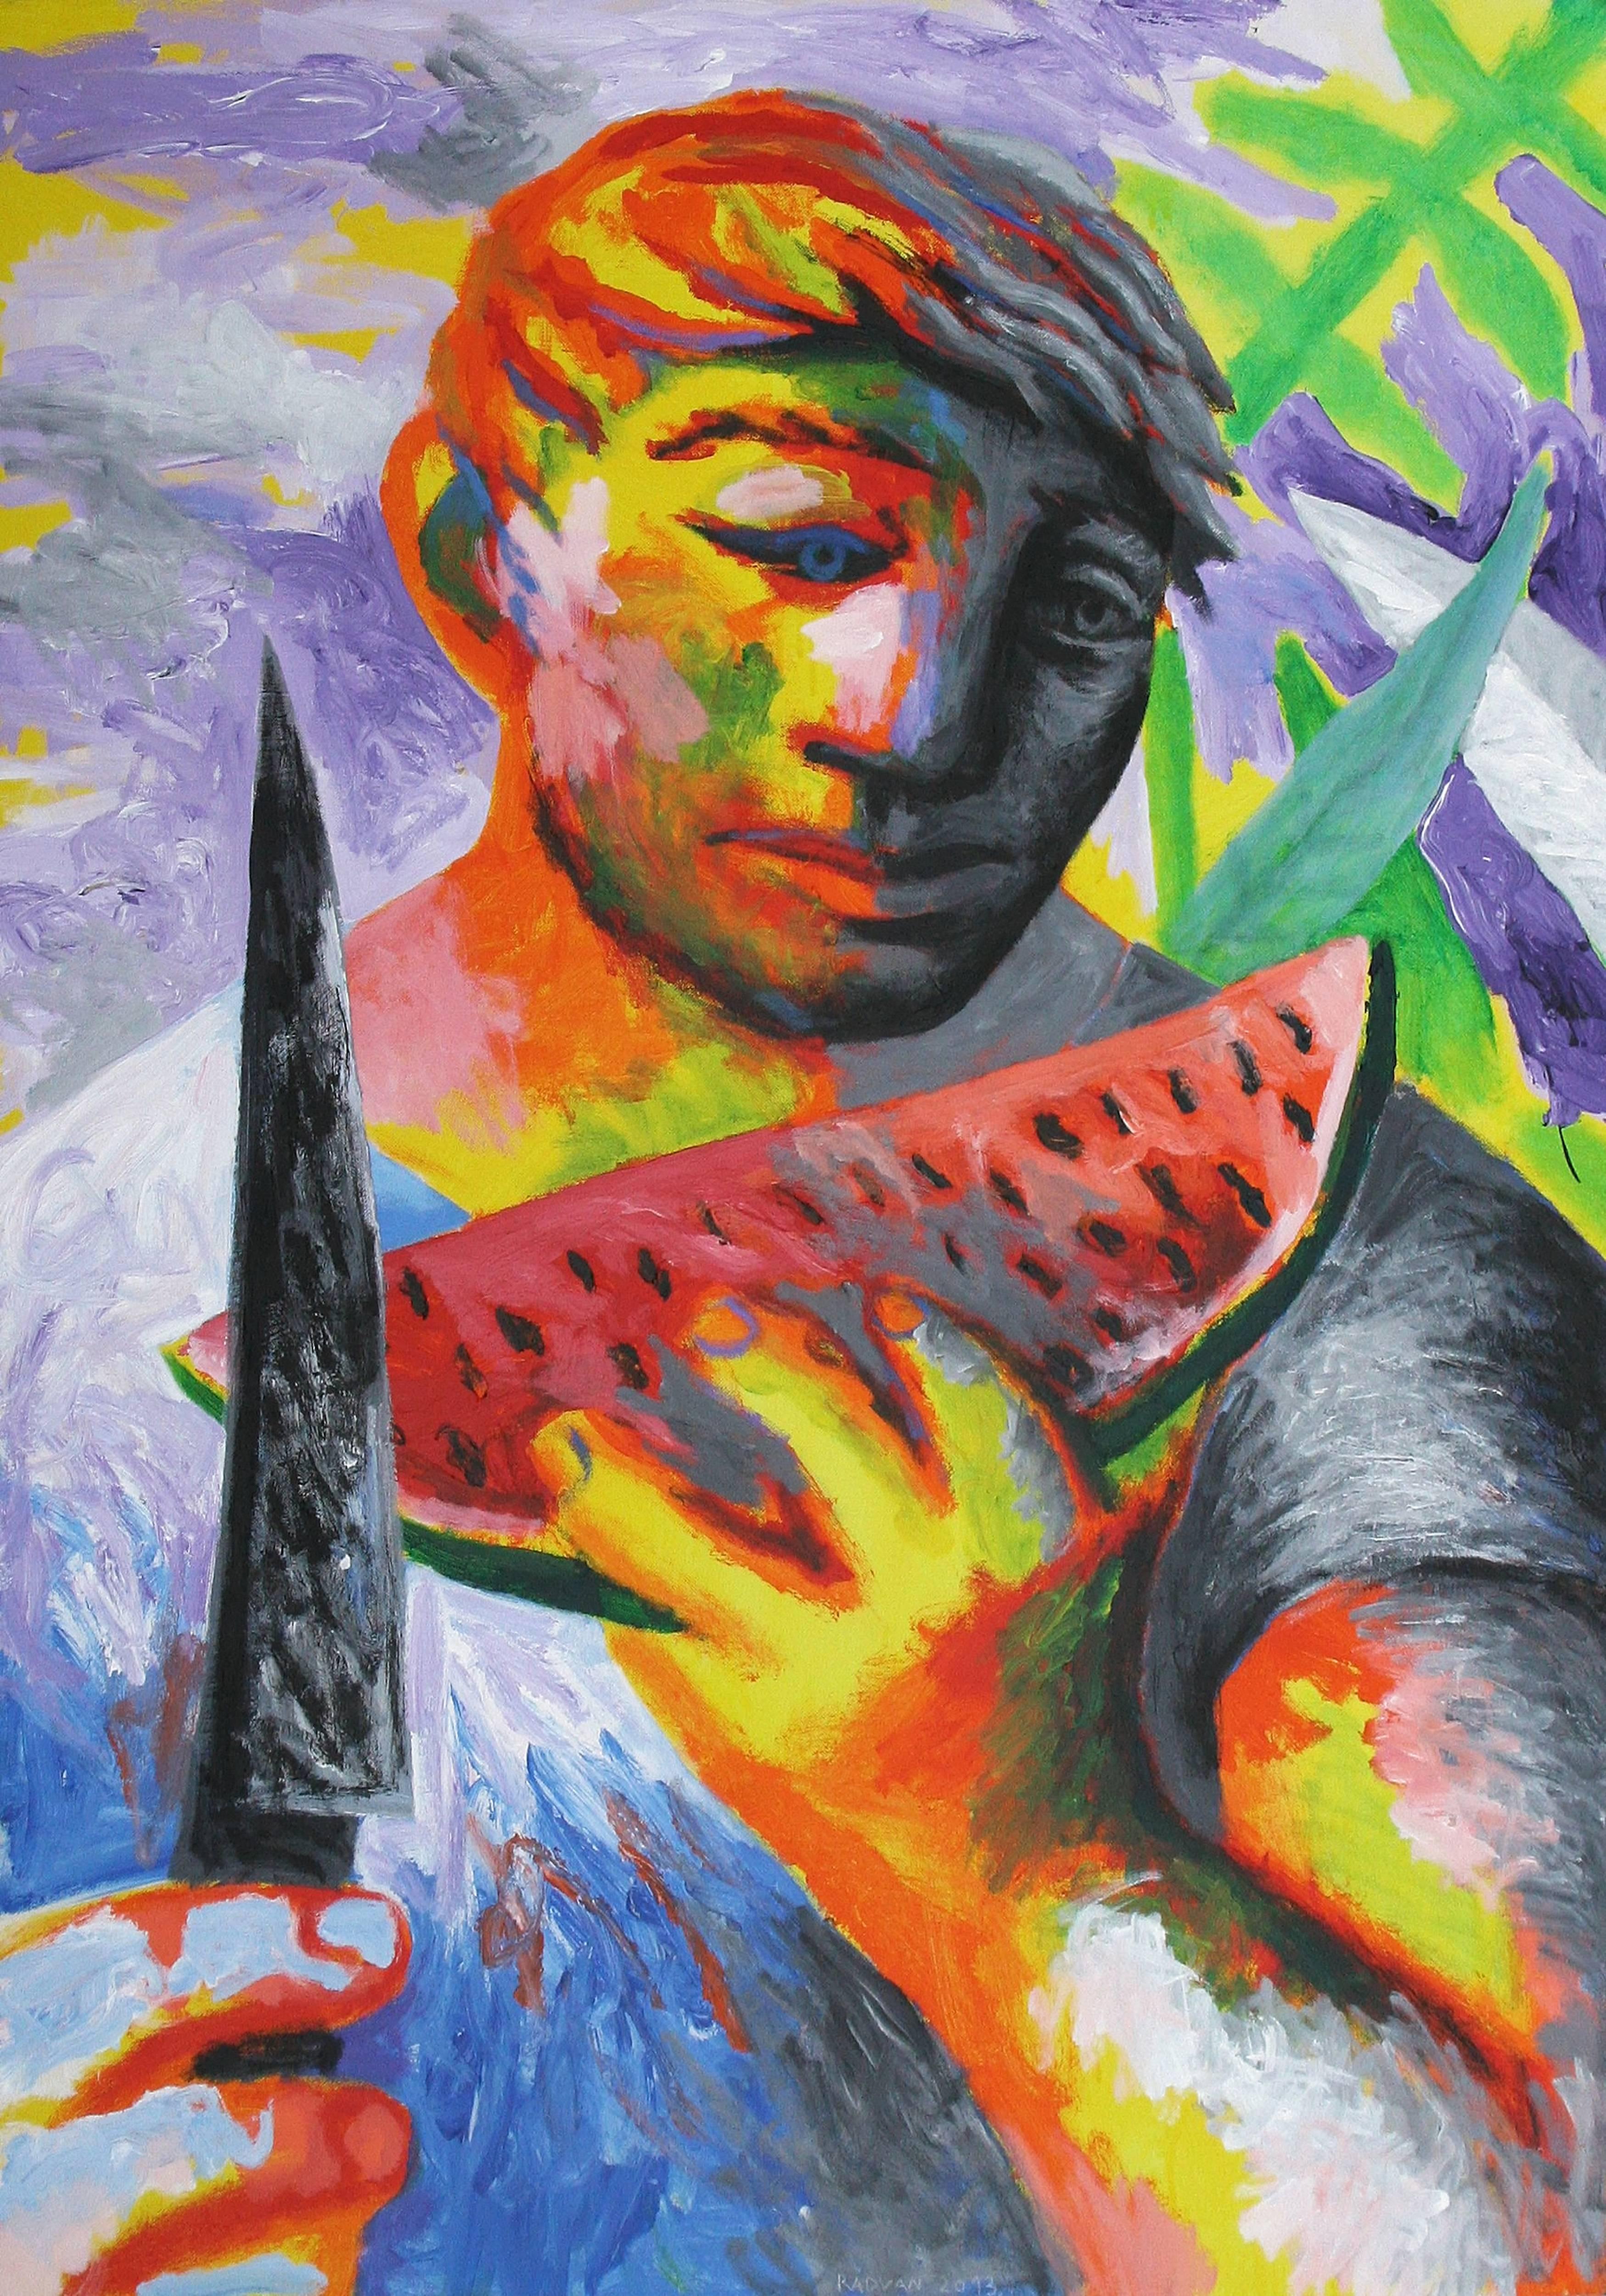 Wassermelonen-Figuratives Gemälde, 21. Jahrhundert, Buntes, Mensch, Obst, Orange